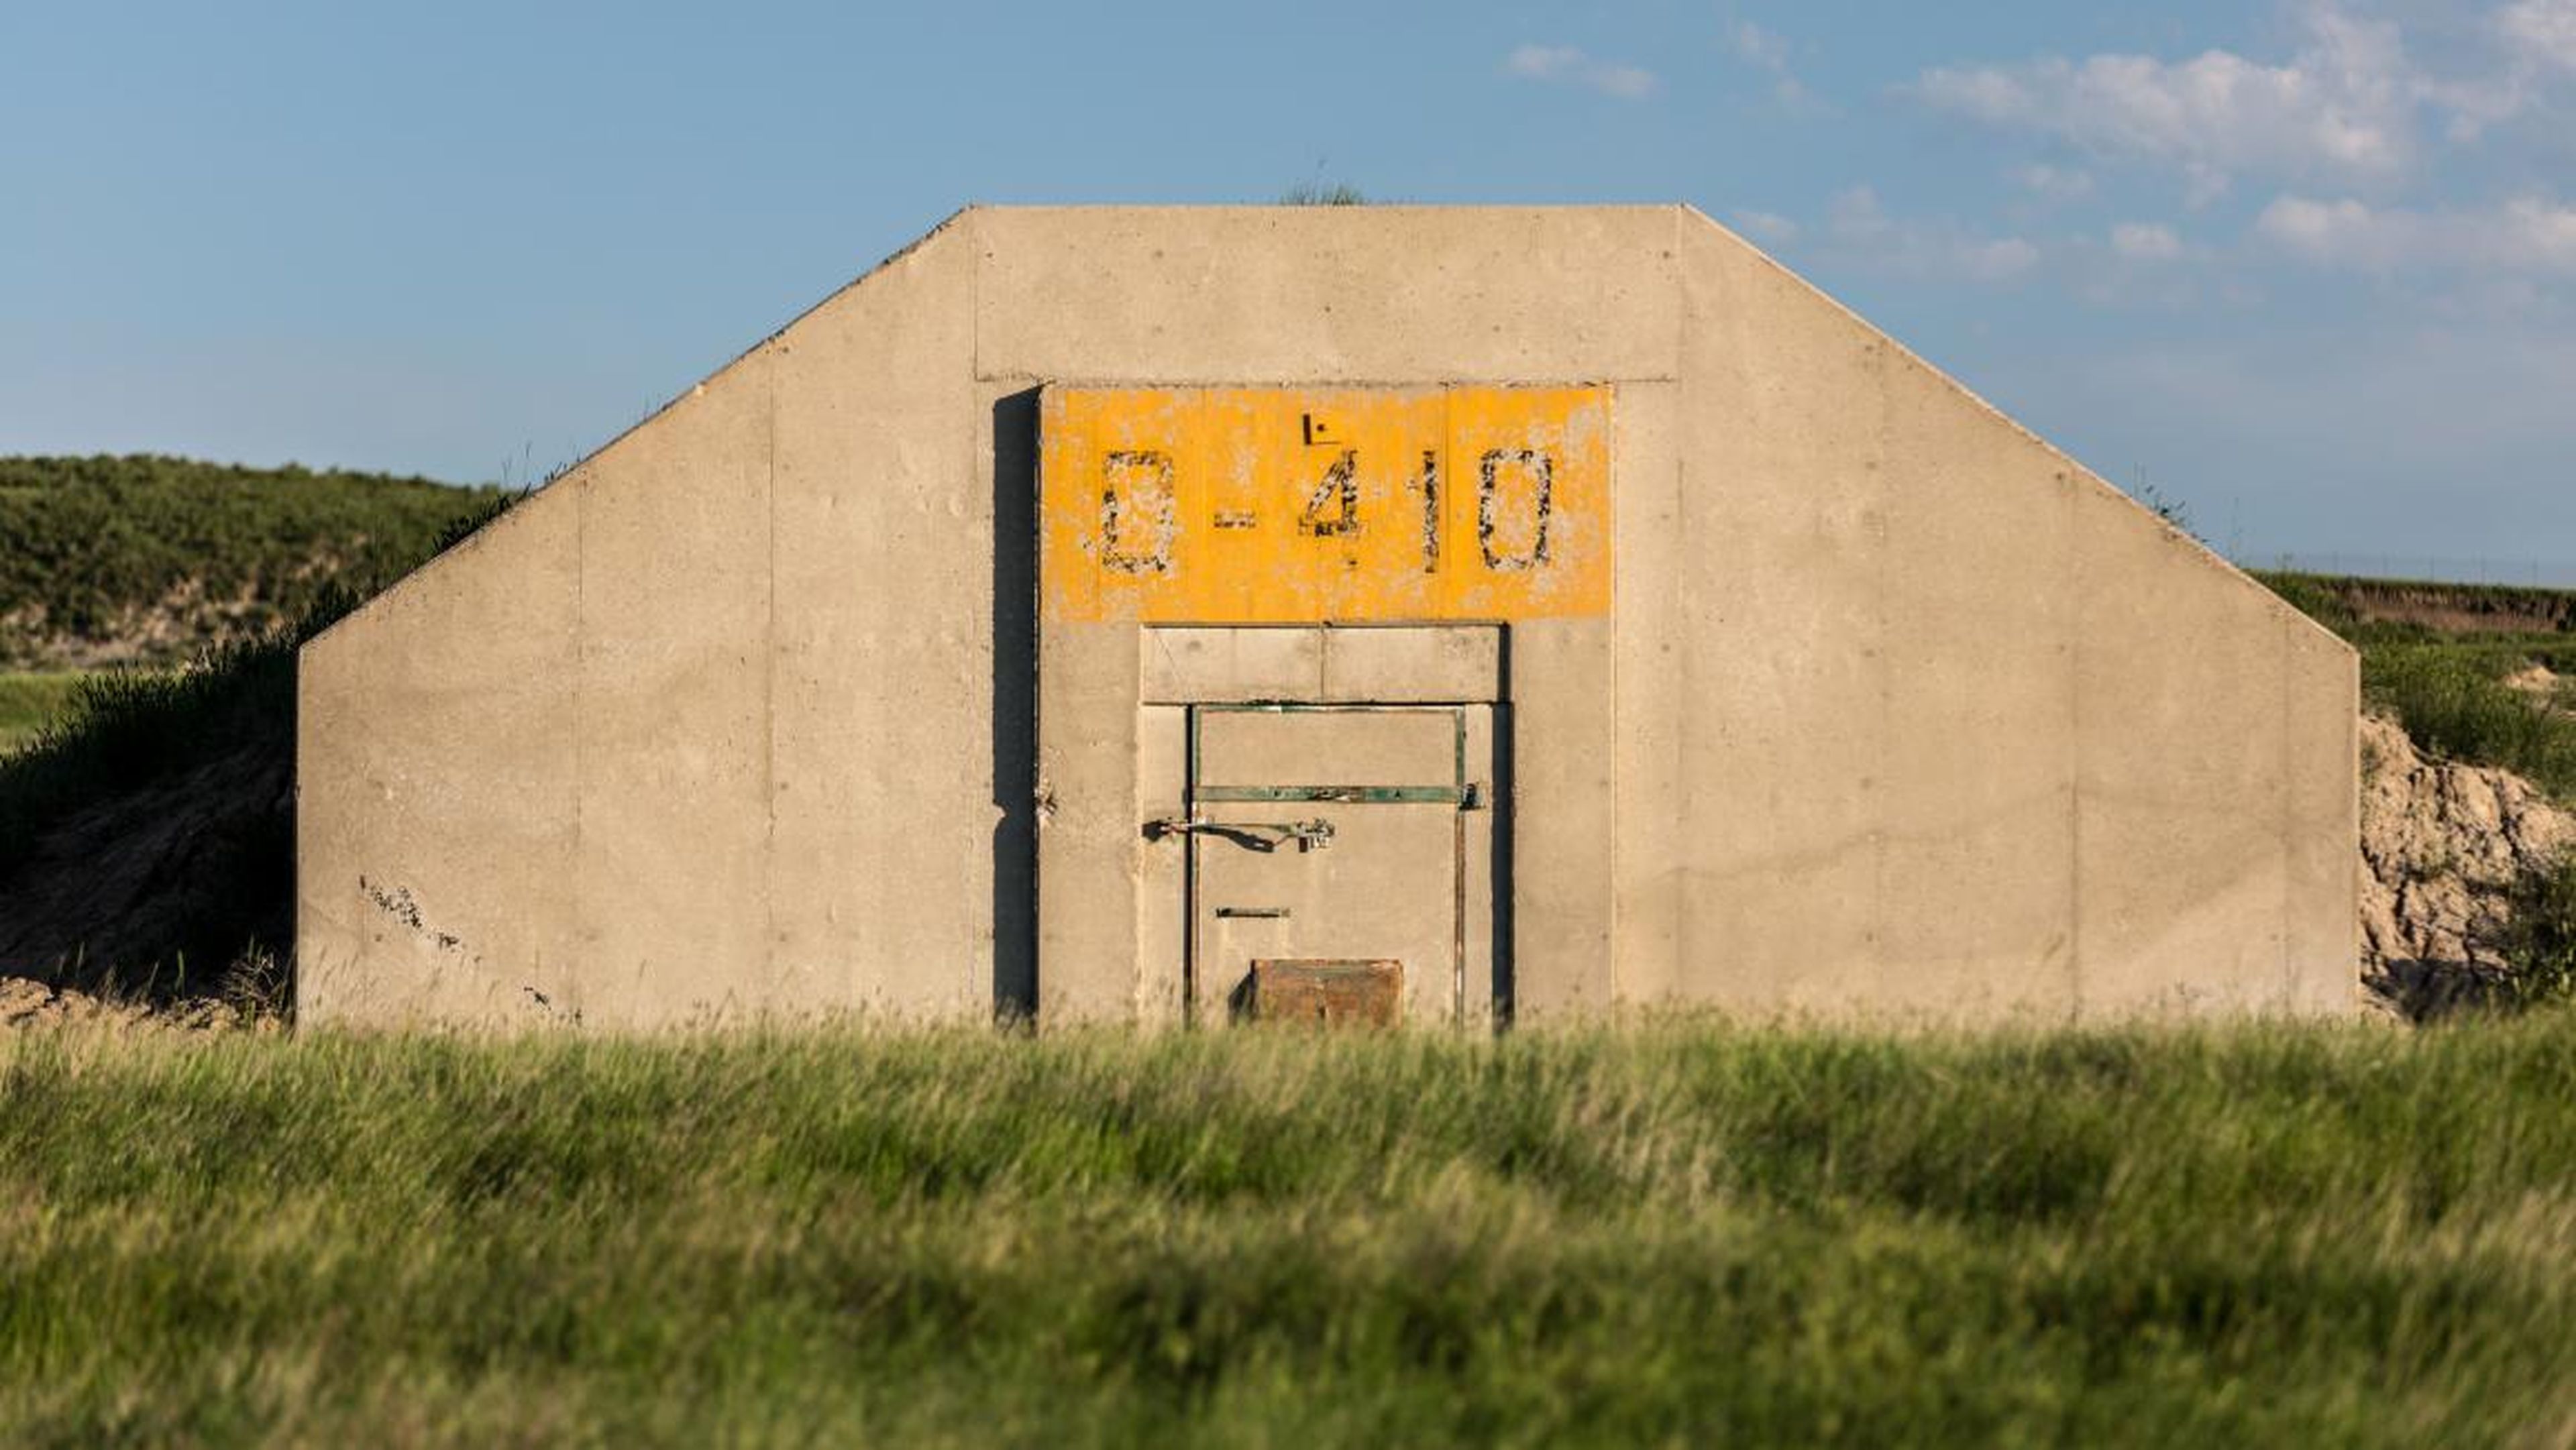 Vivos construyó un complejo de búnkeres en Dakota del Sur casi del tamaño de Manhattan.